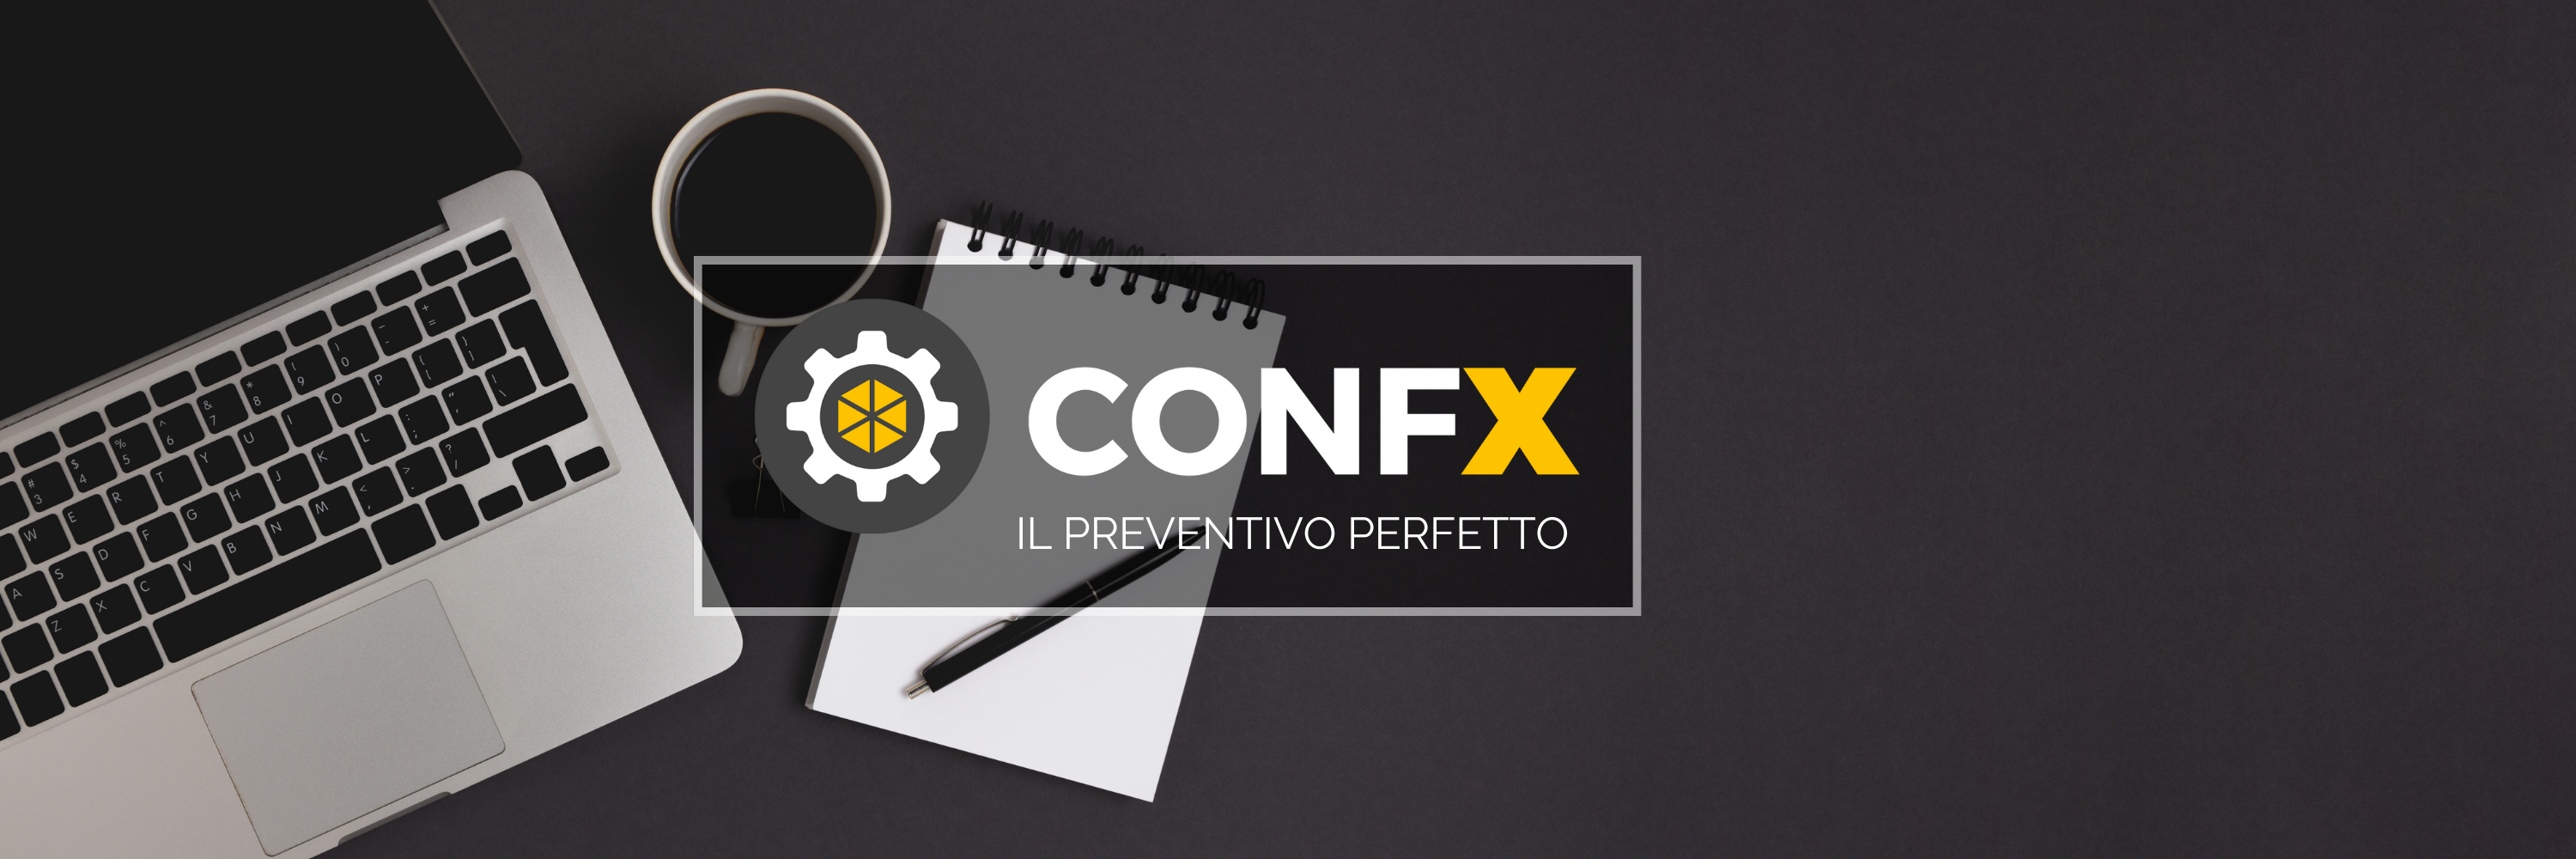 CONFX2: La professionalità si trasmette da come ti presenti